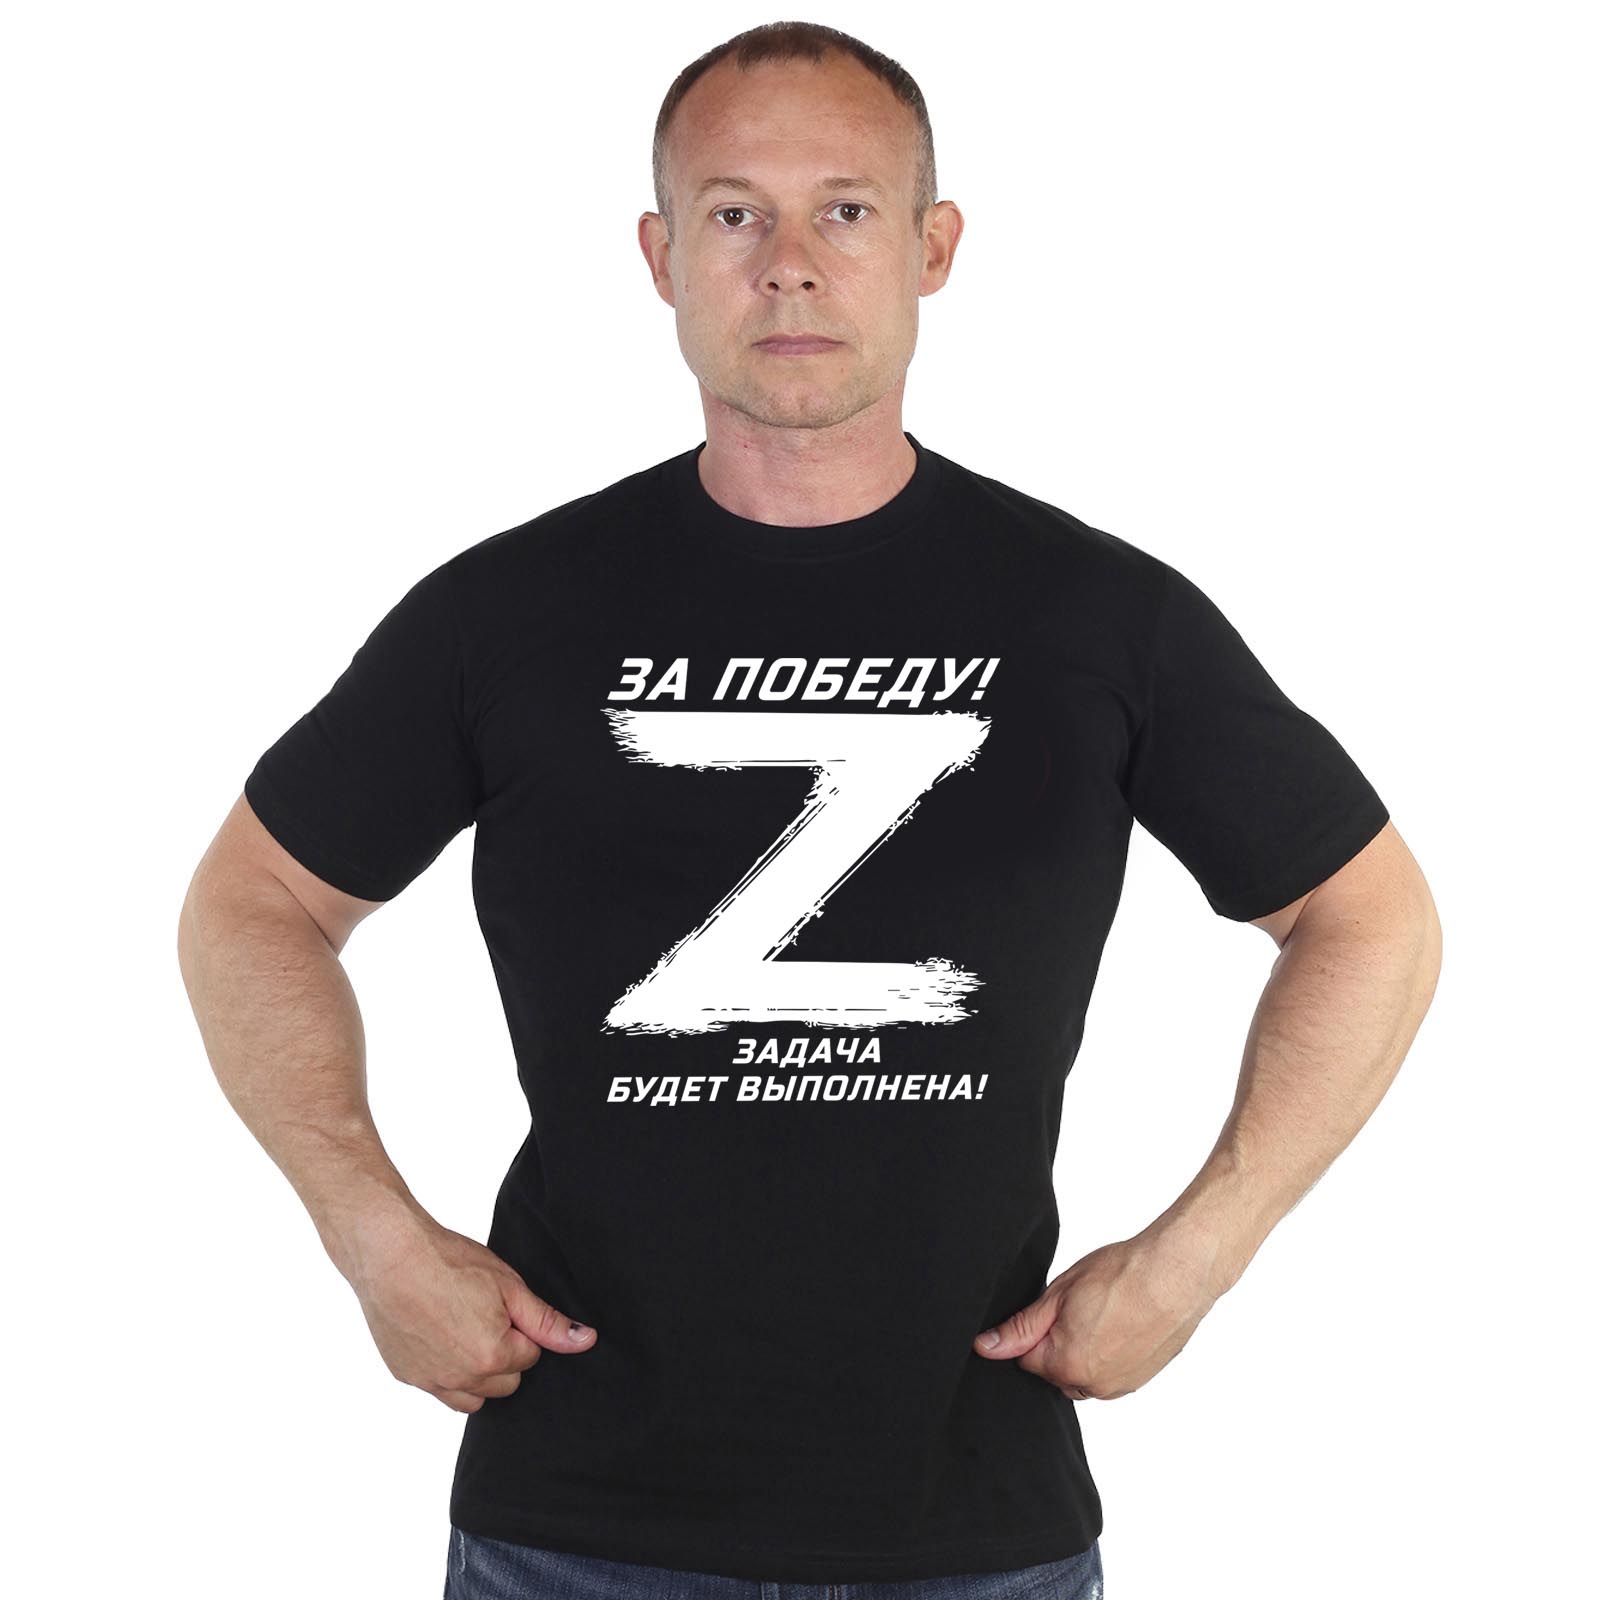 Недорогие мужские футболки с мерчем Z